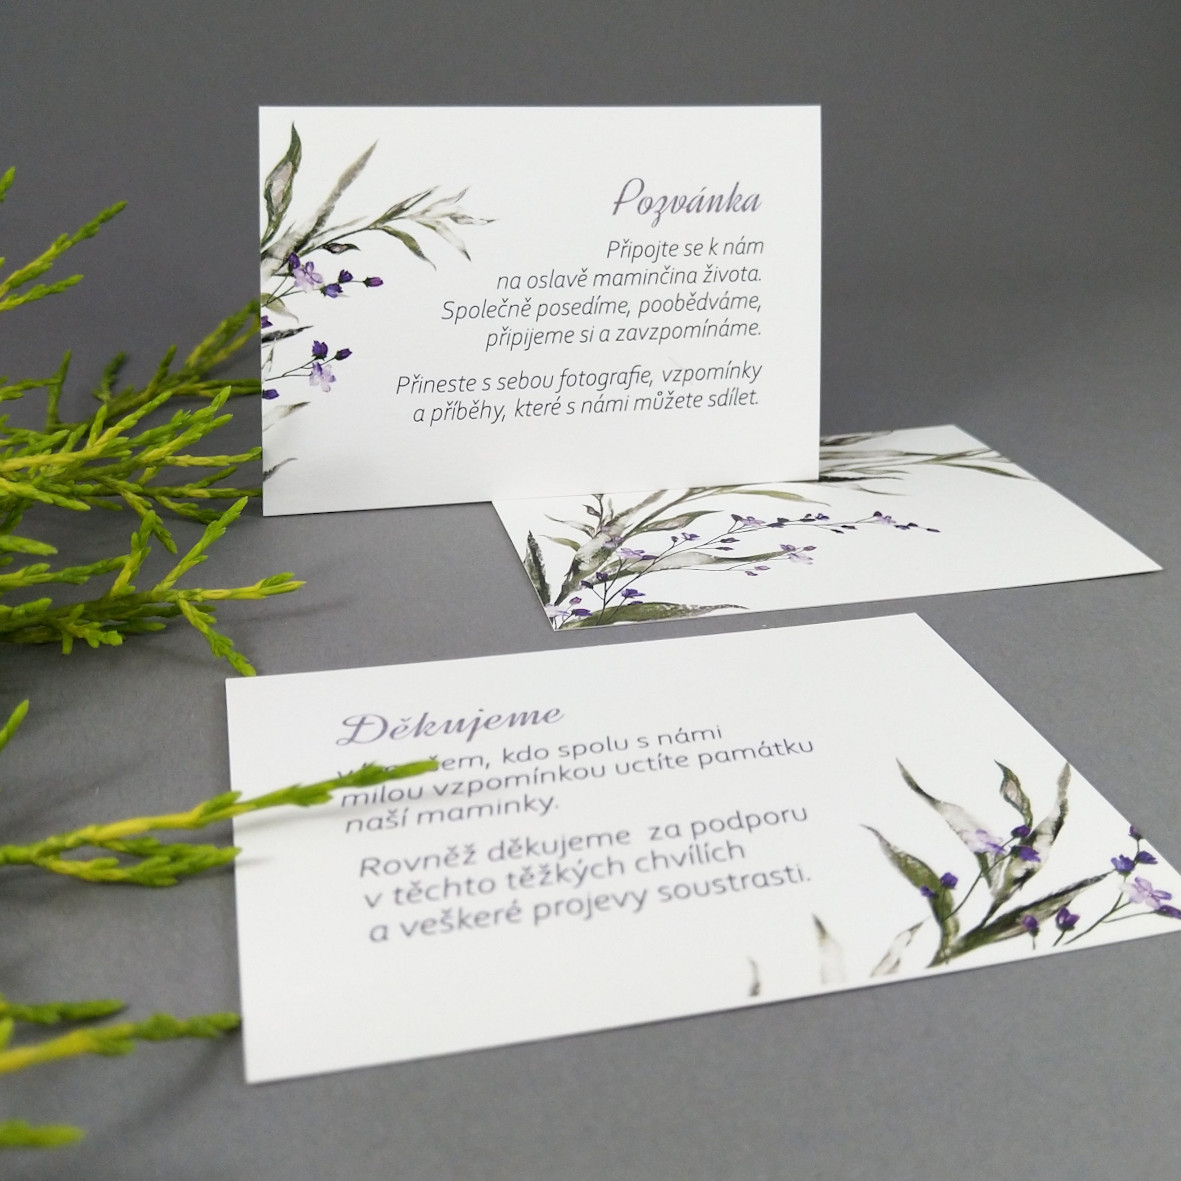 Pozvánka, informační karta – s motivem ratolesti a drobných fialových květů, formát 100 × 70 mm, oboustranná